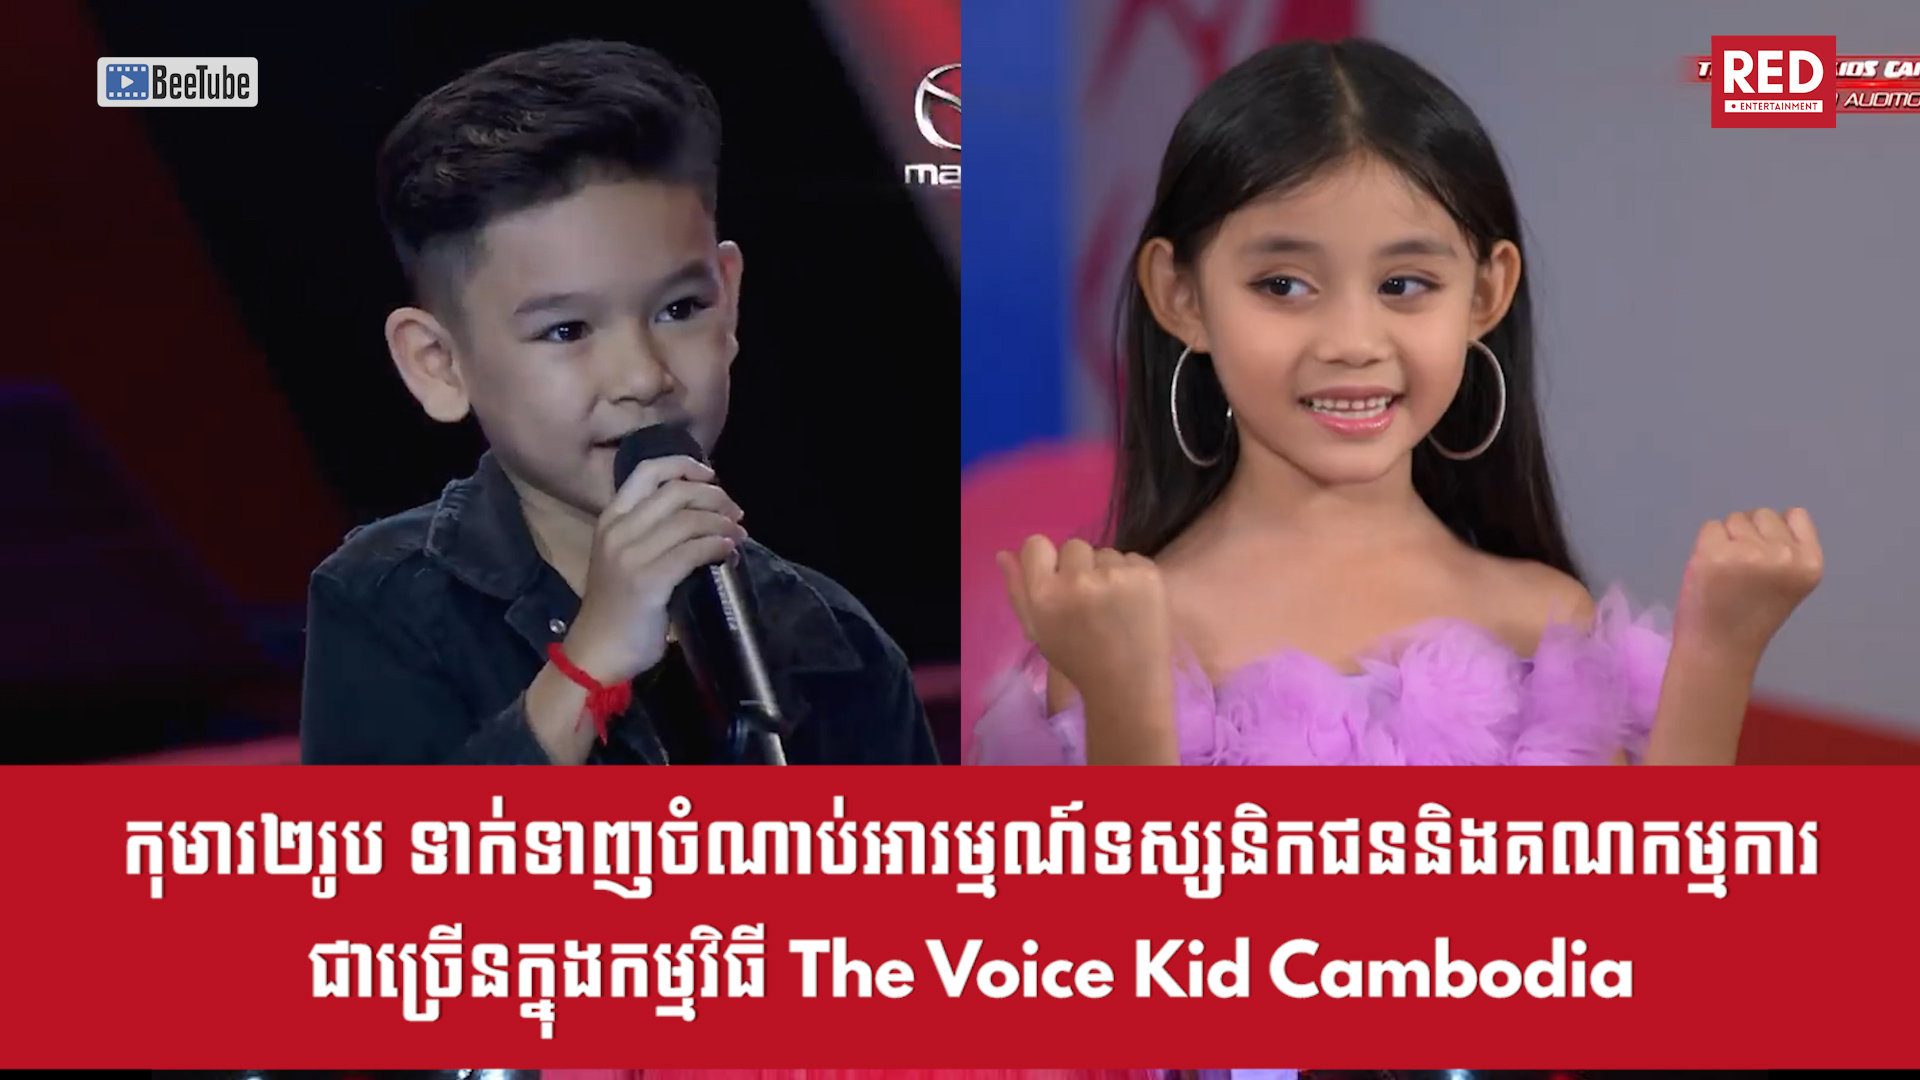 កុមារ២រូបទាក់ទាញចំណាប់អារម្មណ៍ទស្សនិកជន និងគណកម្មការច្រើននៅក្នុងកម្មវិធី The Voice Kid Cambodia